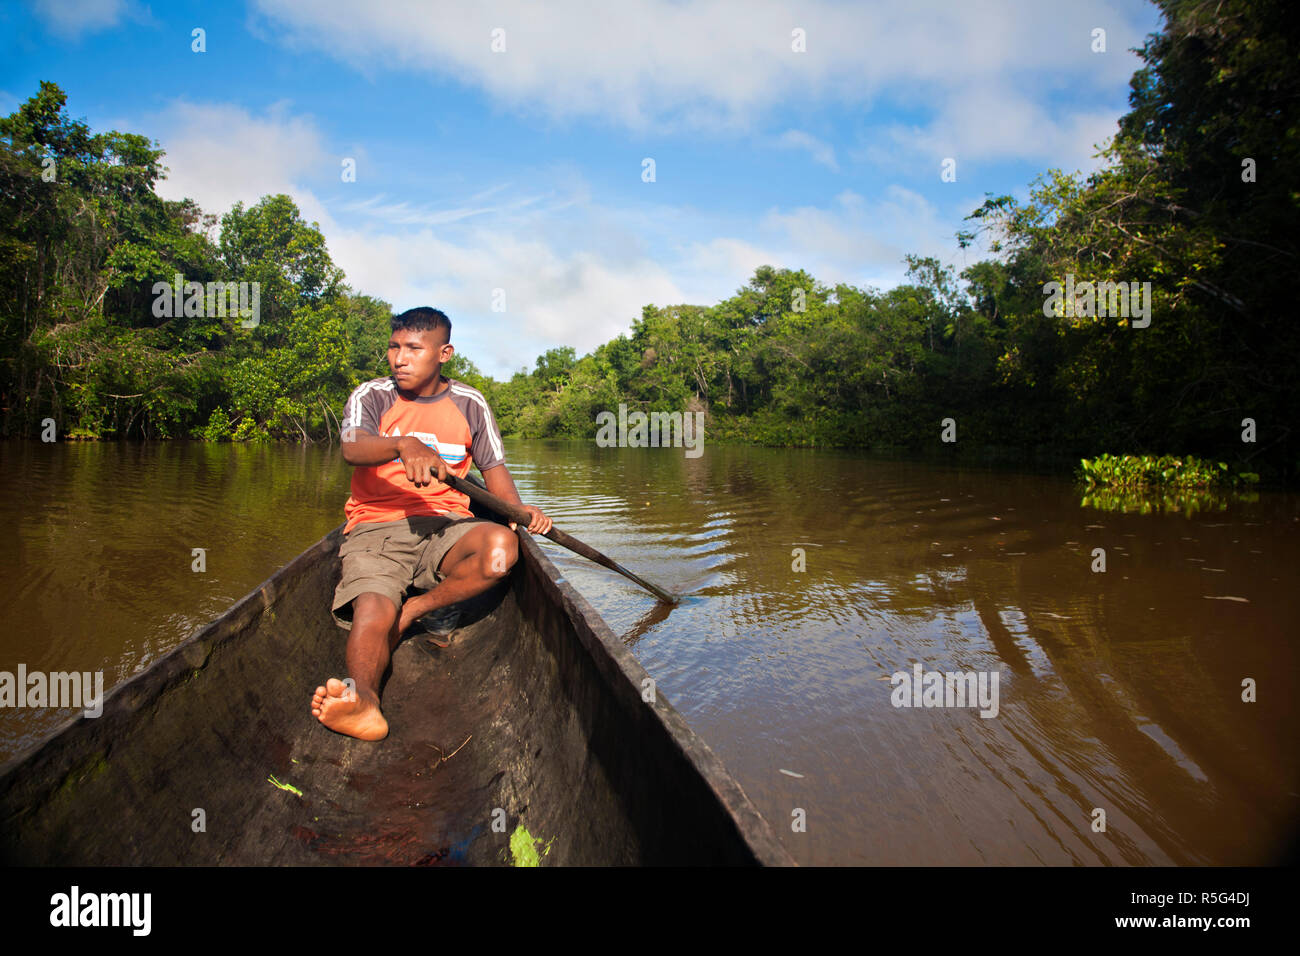 Venezuela, Delta Amacuro, Orinoco Delta, Warao man in dug out canoe Stock Photo